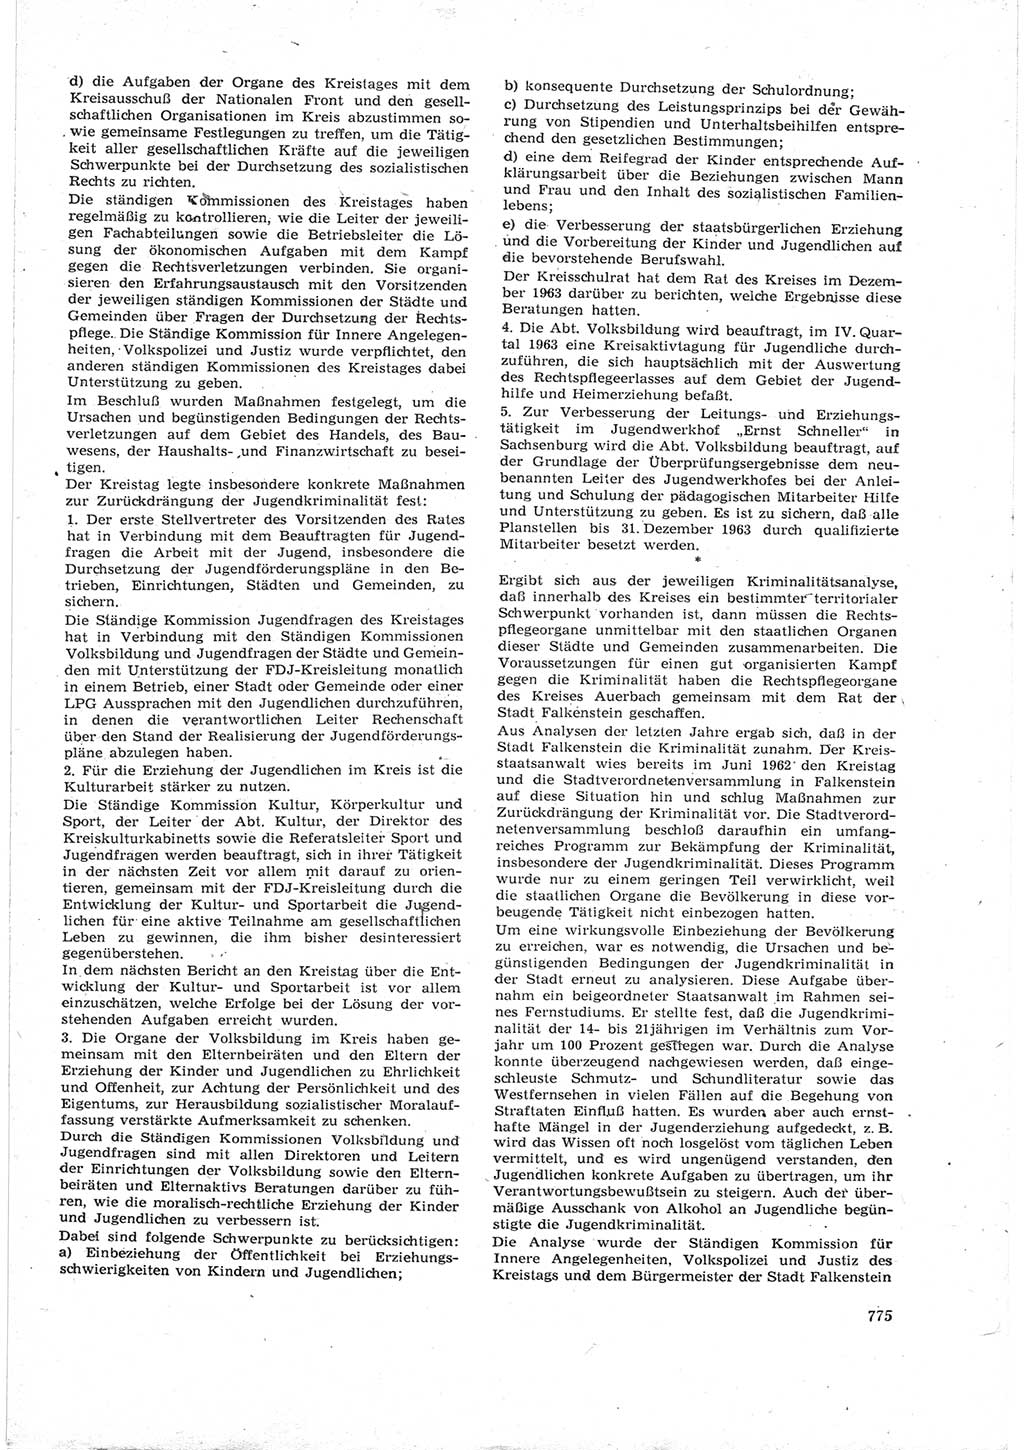 Neue Justiz (NJ), Zeitschrift für Recht und Rechtswissenschaft [Deutsche Demokratische Republik (DDR)], 17. Jahrgang 1963, Seite 775 (NJ DDR 1963, S. 775)